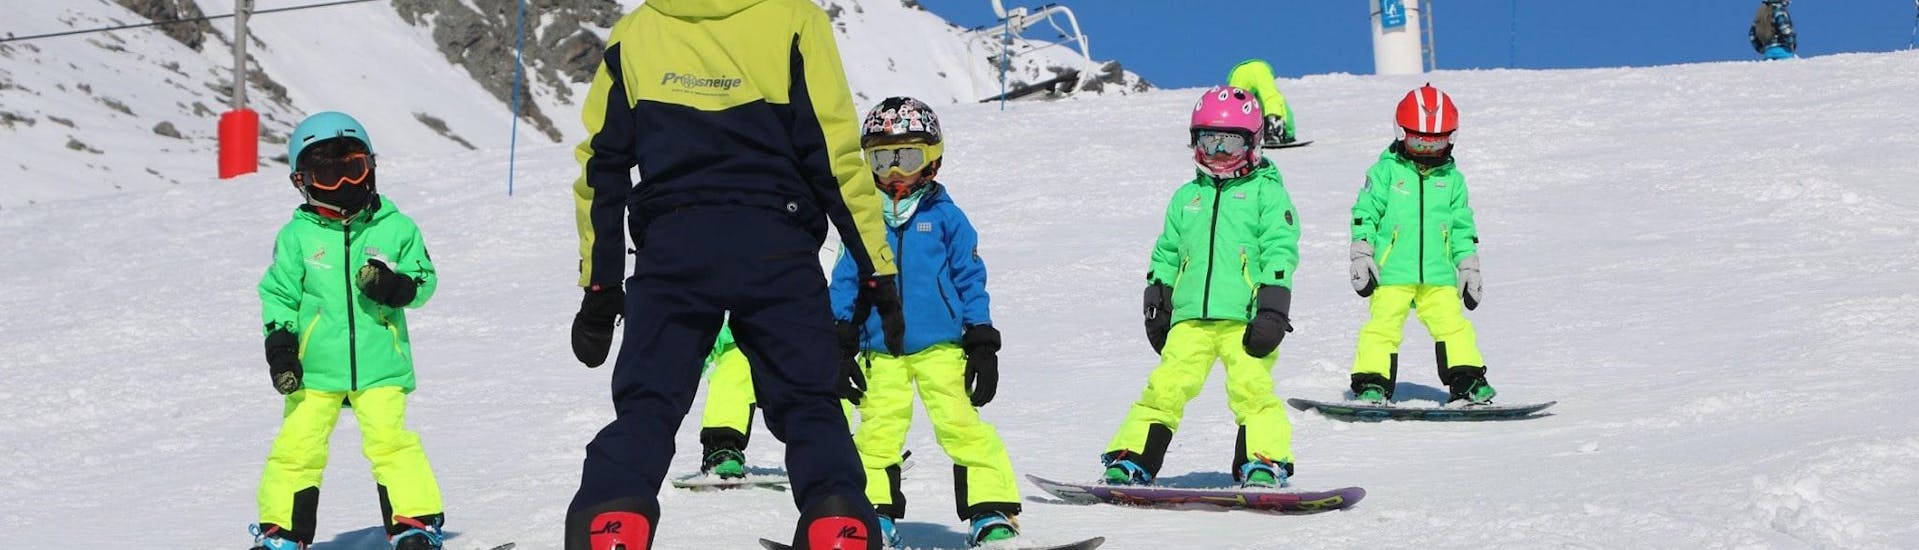 Ein Skilehrer der Skischule Prosneige Val Thorens & Les Menuires unterrichtet lachende Kinder während des Snowboardunterrichts für Kinder jeden Alters und jeden Levels.